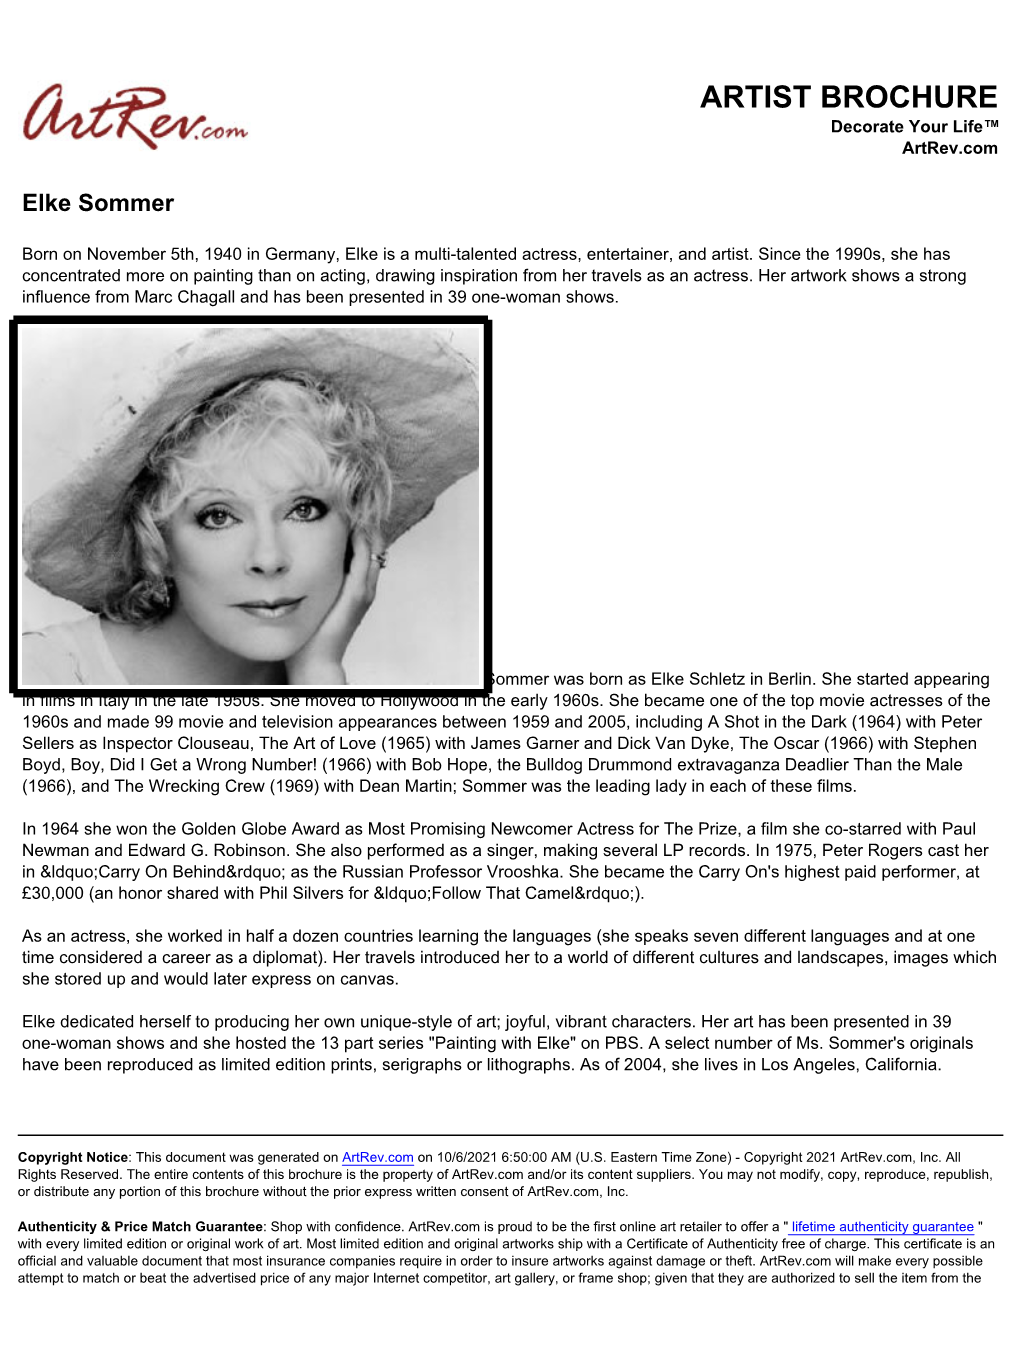 Elke Sommer Biography